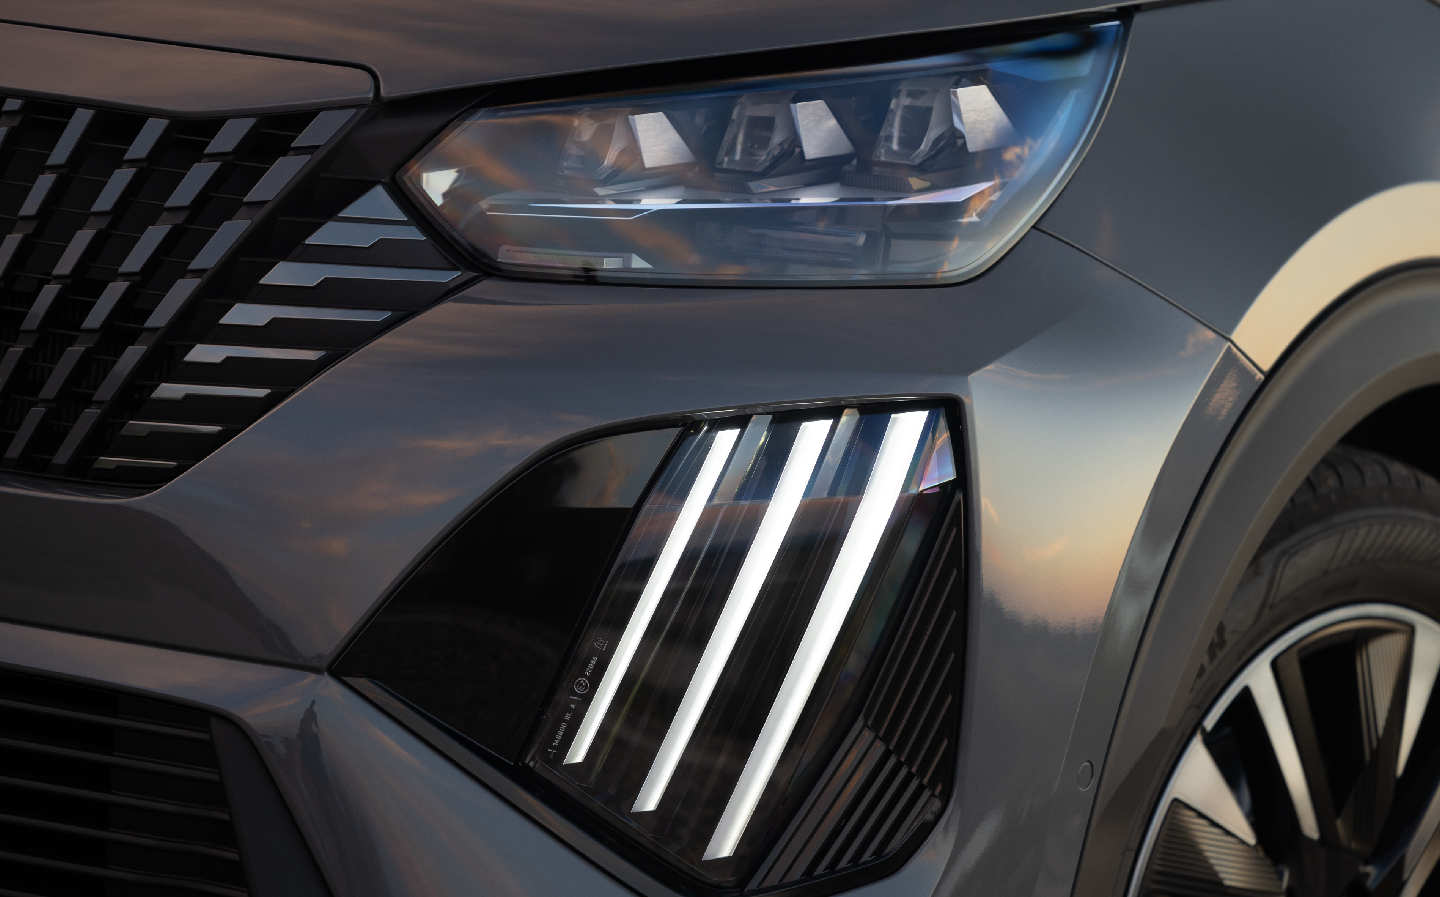 2023 Peugeot e-2008 lighting details